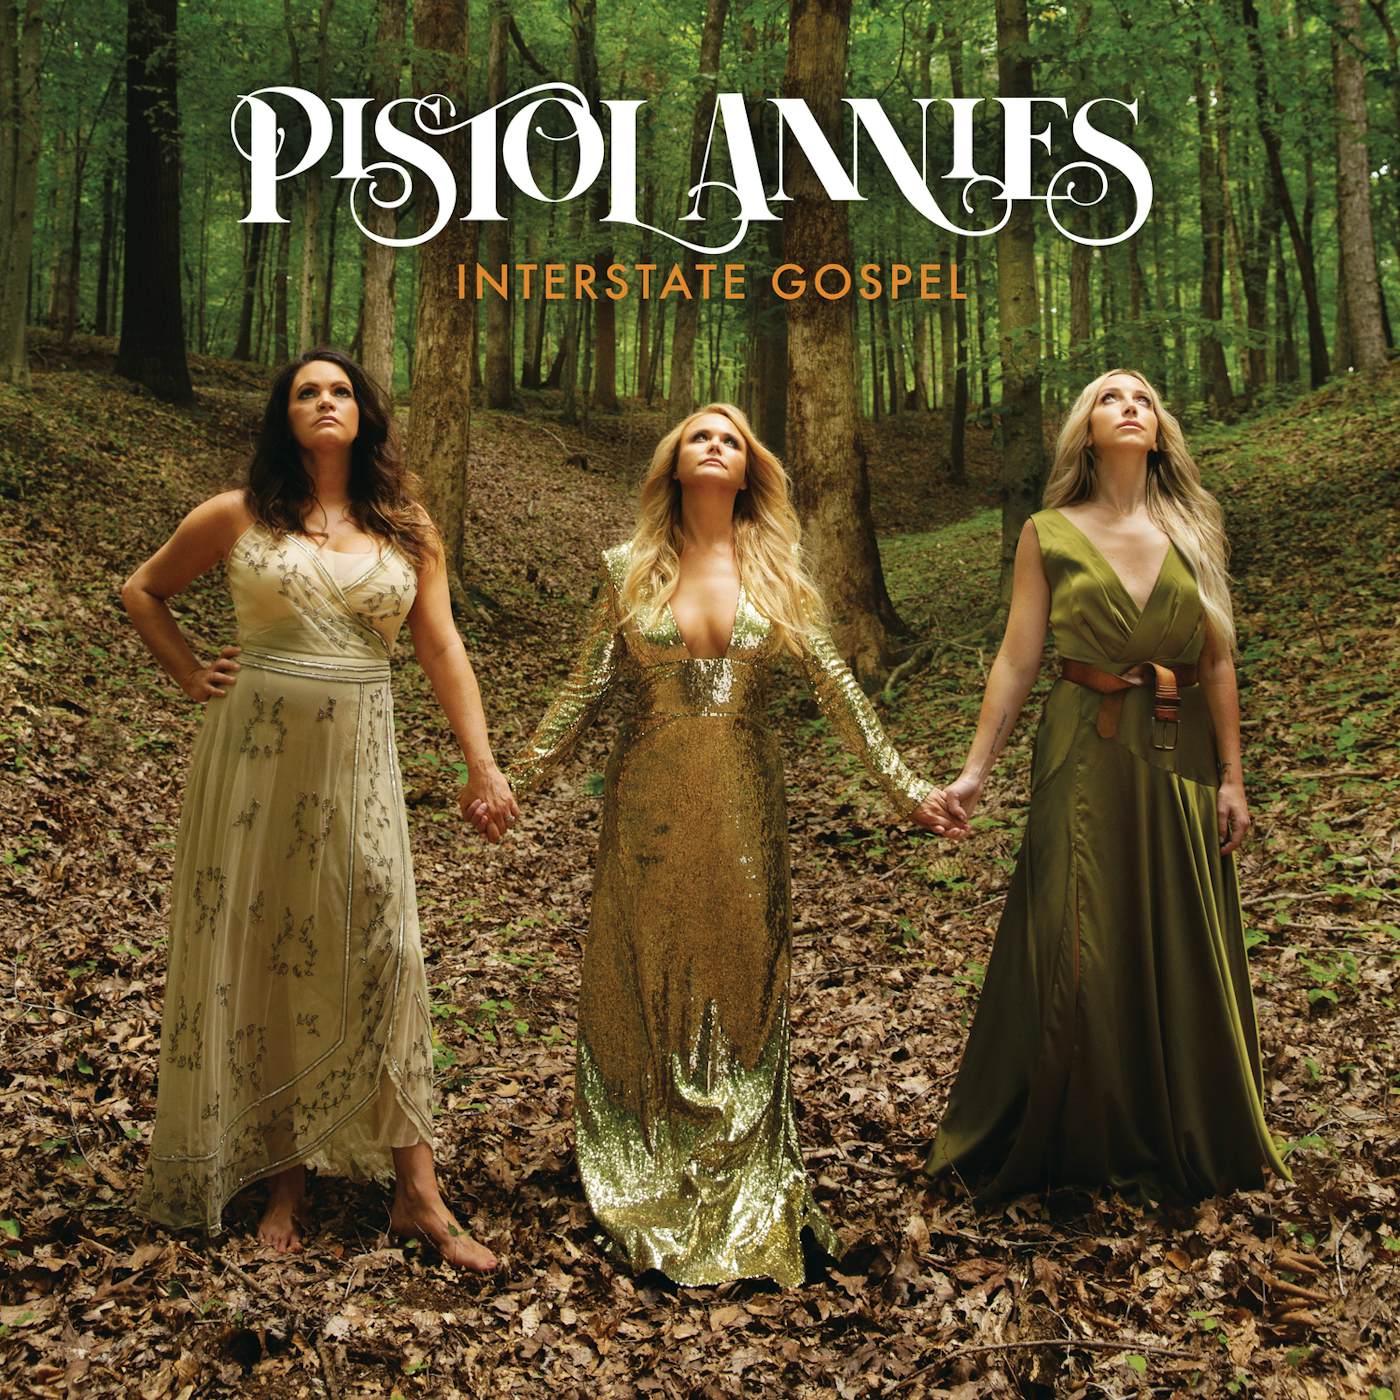 Pistol Annies Interstate Gospel Vinyl Record